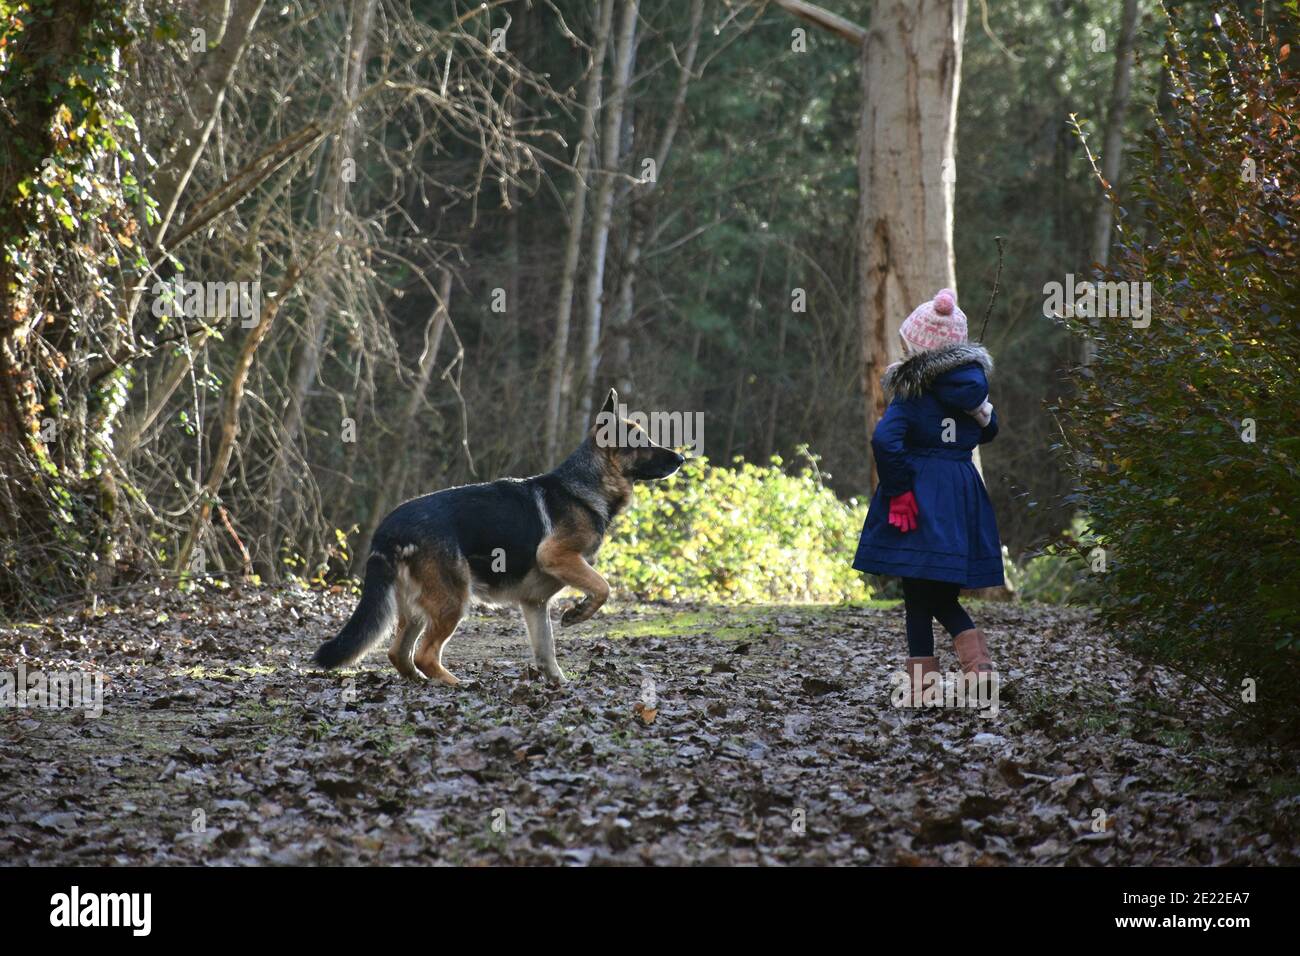 Fille de cinq ans jouant avec le berger allemand sur un chemin rempli de feuilles mortes. Fille jouant avec le Berger allemand. Banque D'Images